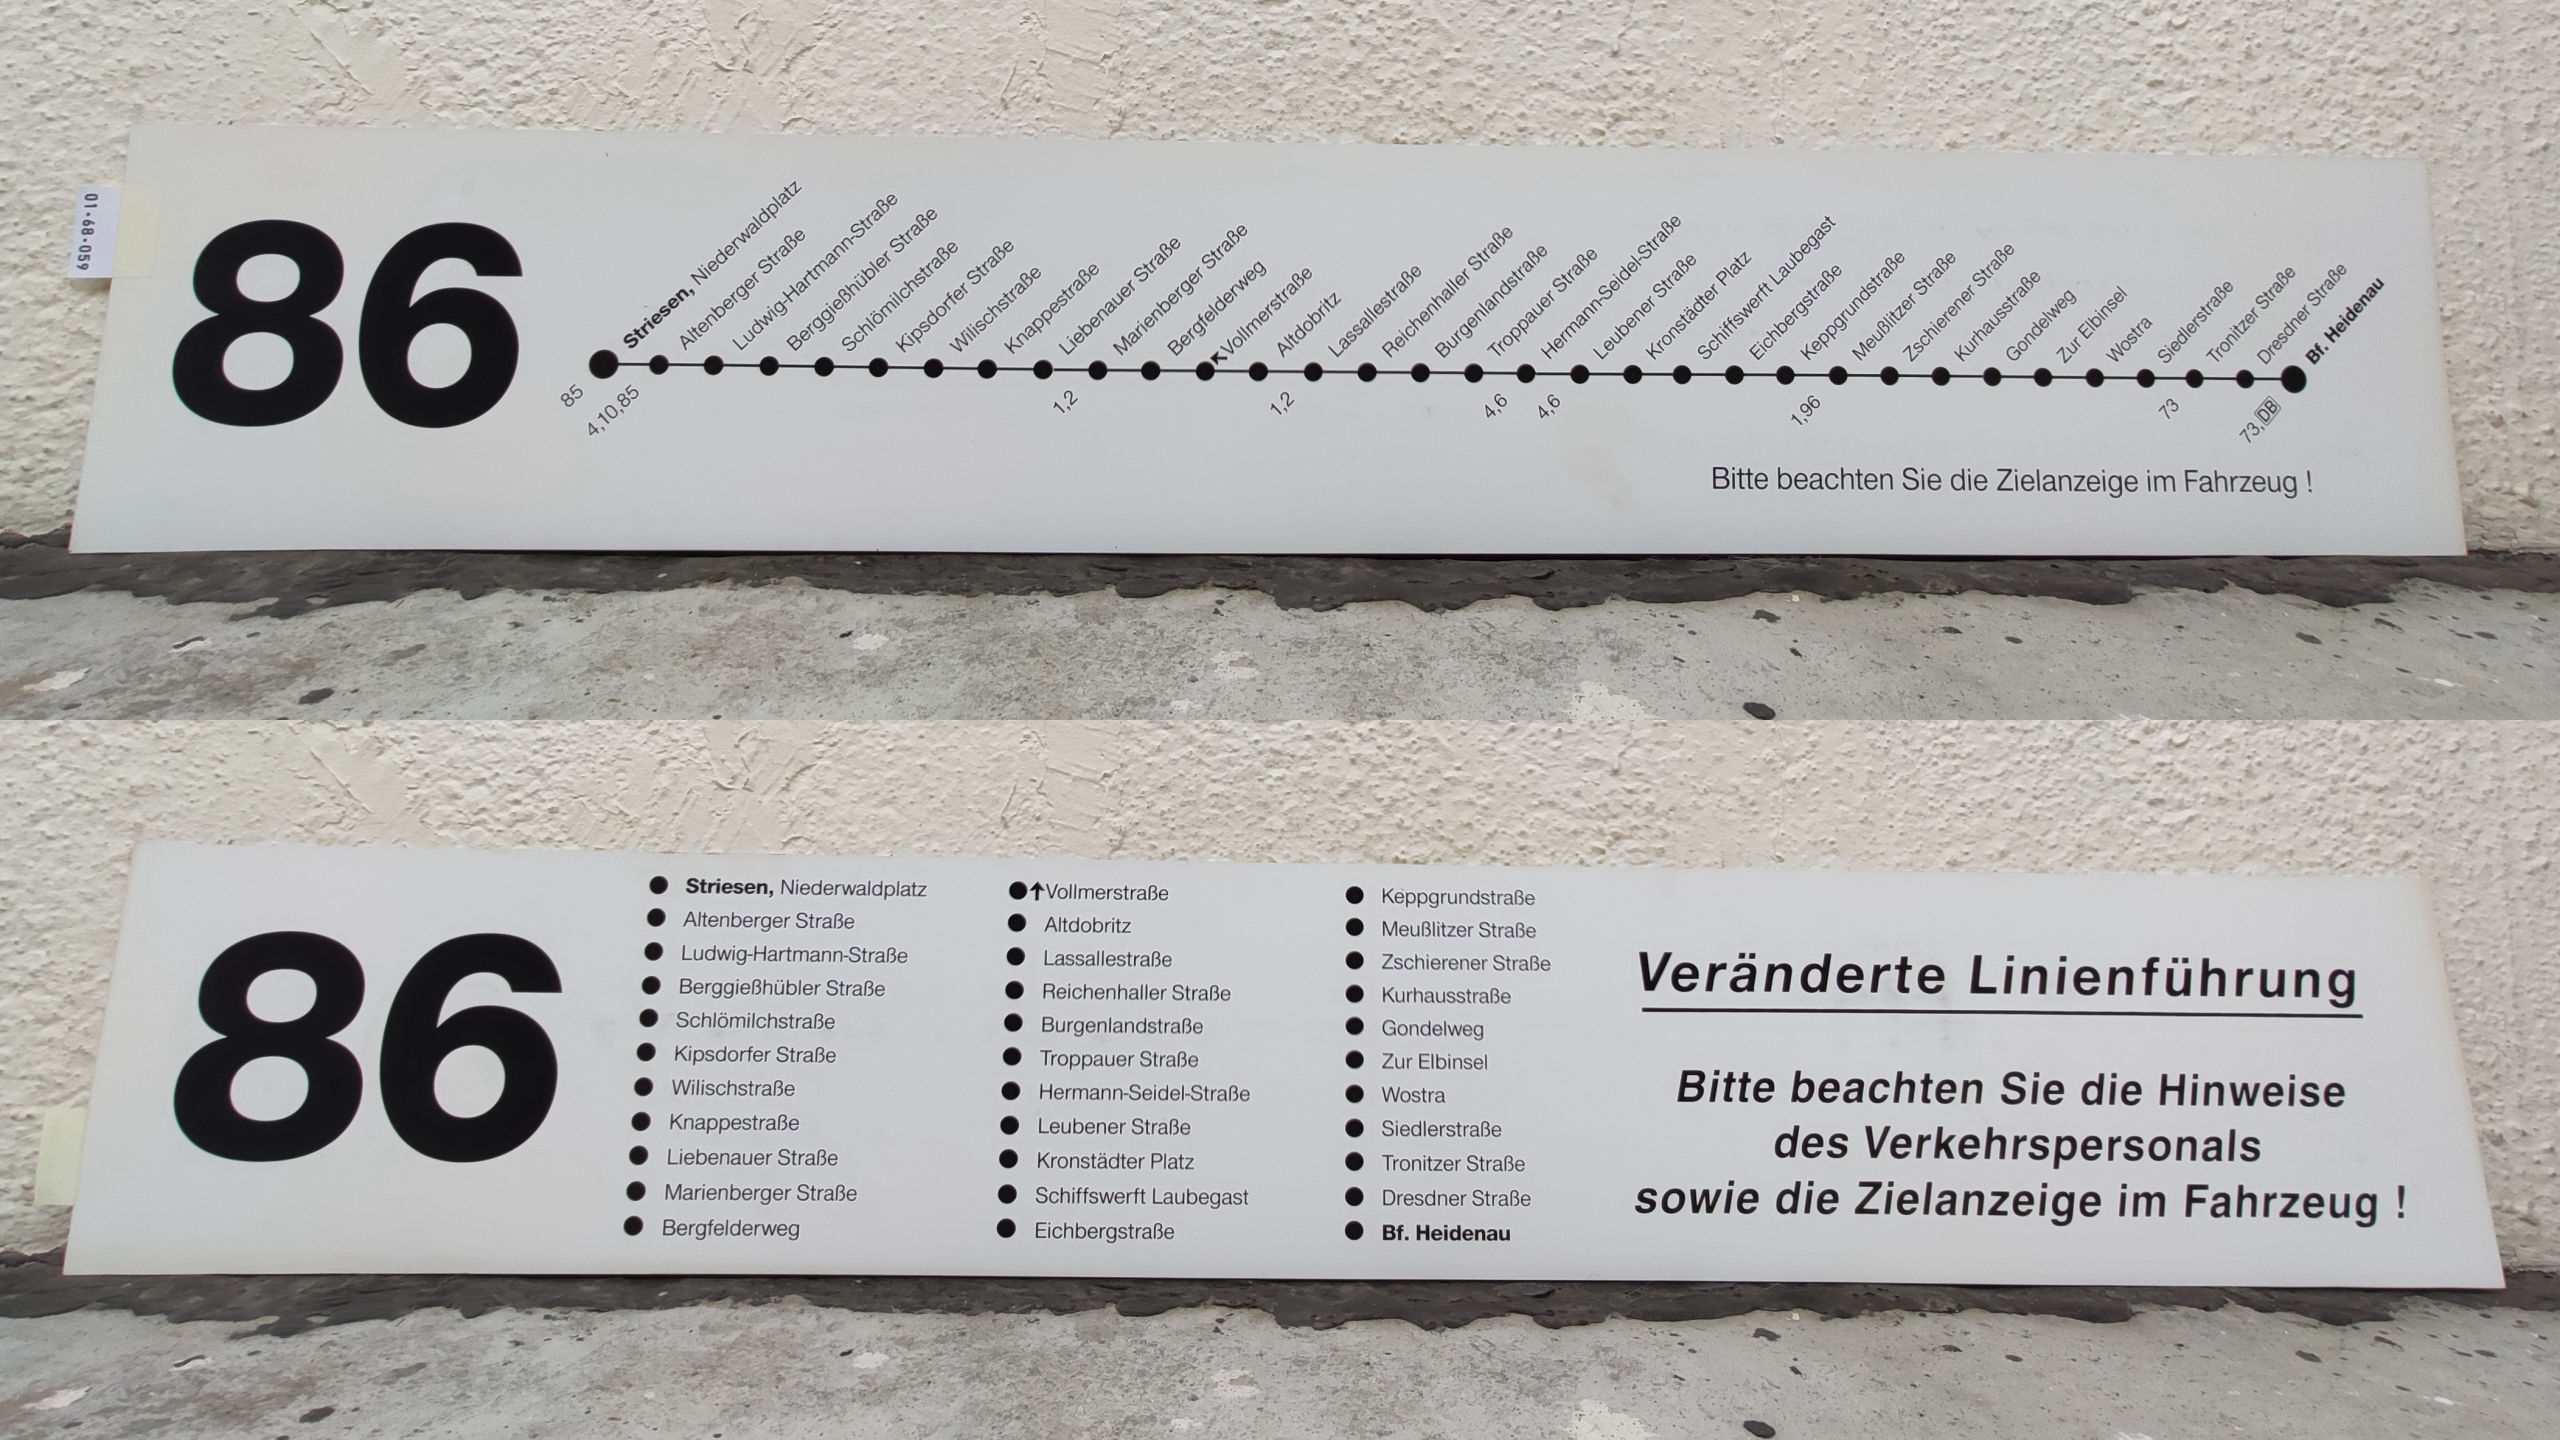 86 Striesen, Niederwaldplatz – Bf. Heidenau